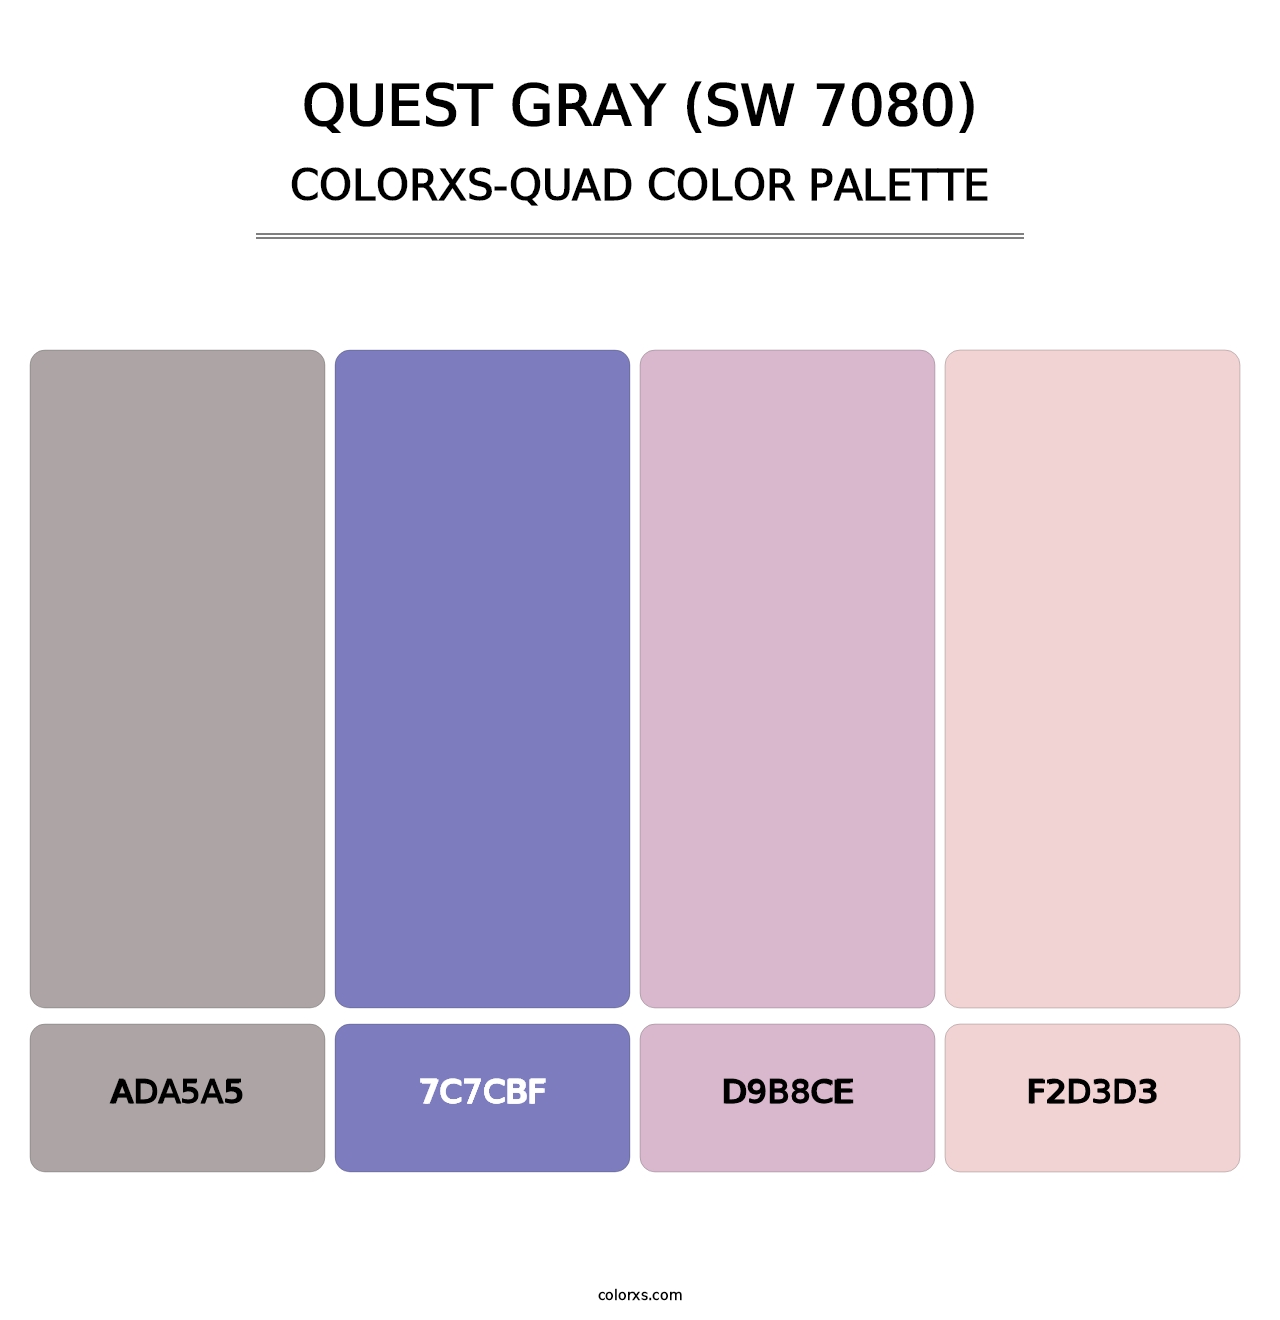 Quest Gray (SW 7080) - Colorxs Quad Palette